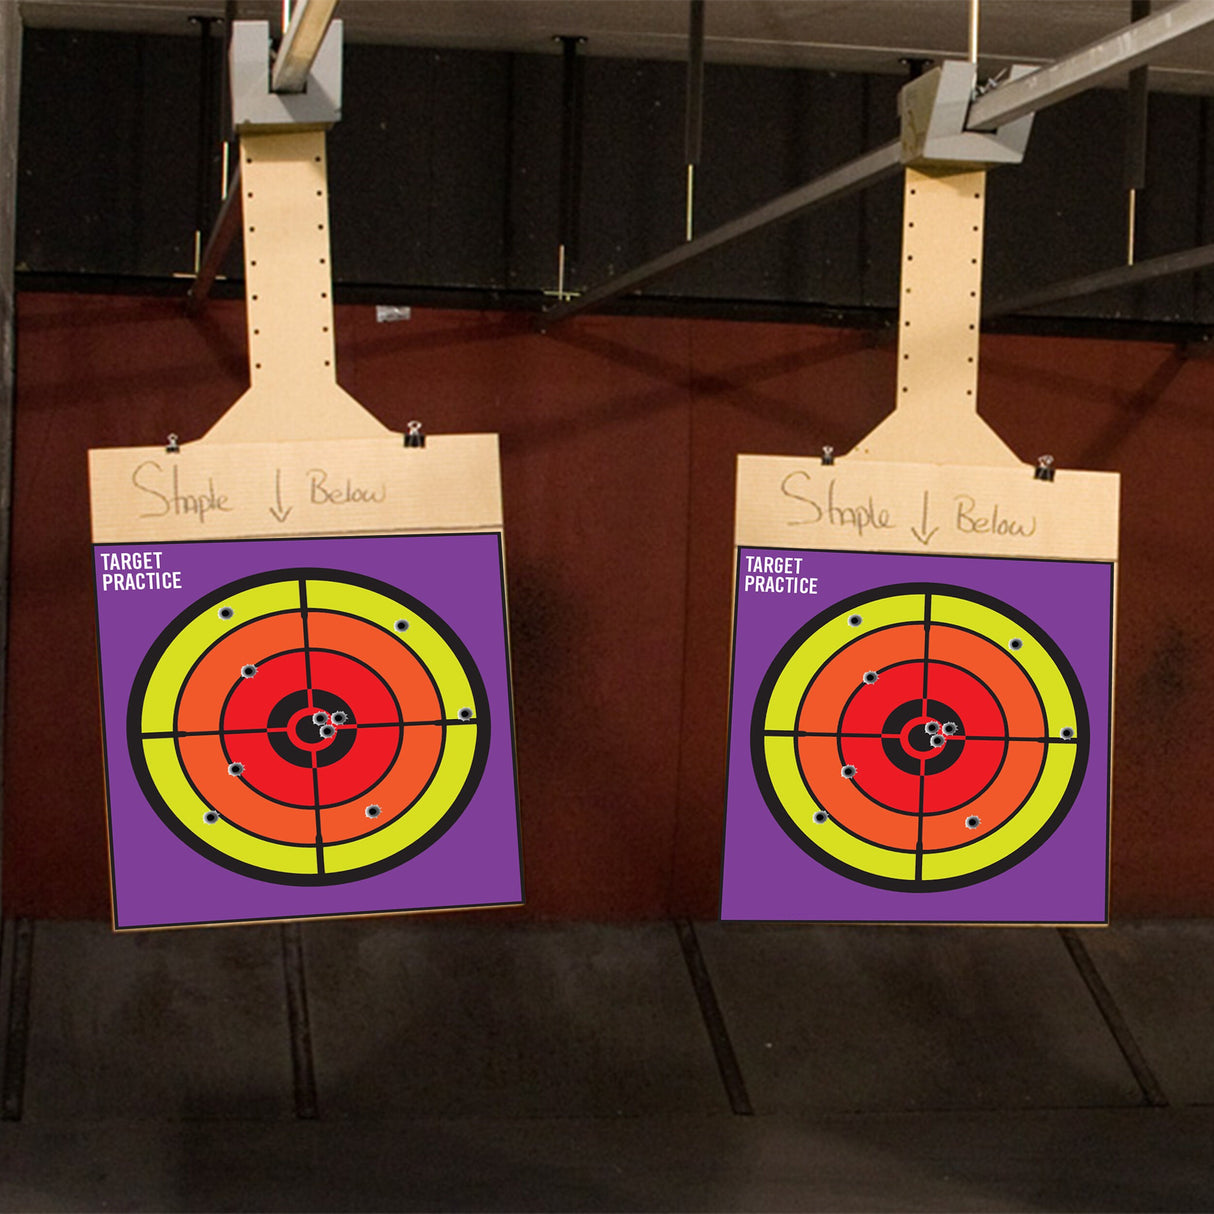 Range Shooting Targets Practice For Gun Rifle Pistol Airsoft Handgun - Large Outdoor Circle Paper Shoot Set